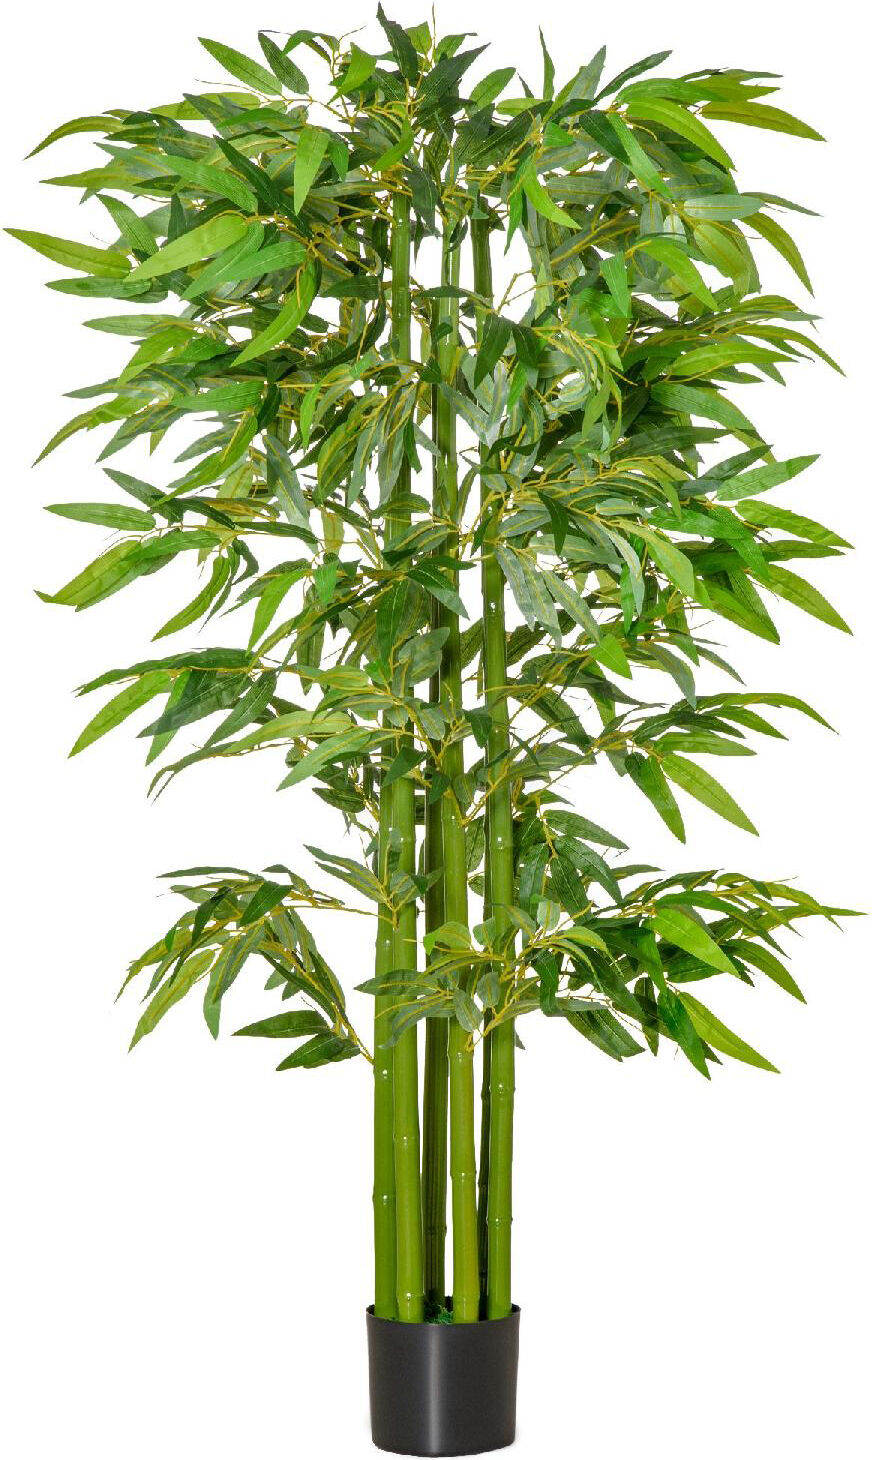 dechome 802dh41 pianta finta di bambù alta 160cm con vaso nero per interno ed esterno verde - 802dh41